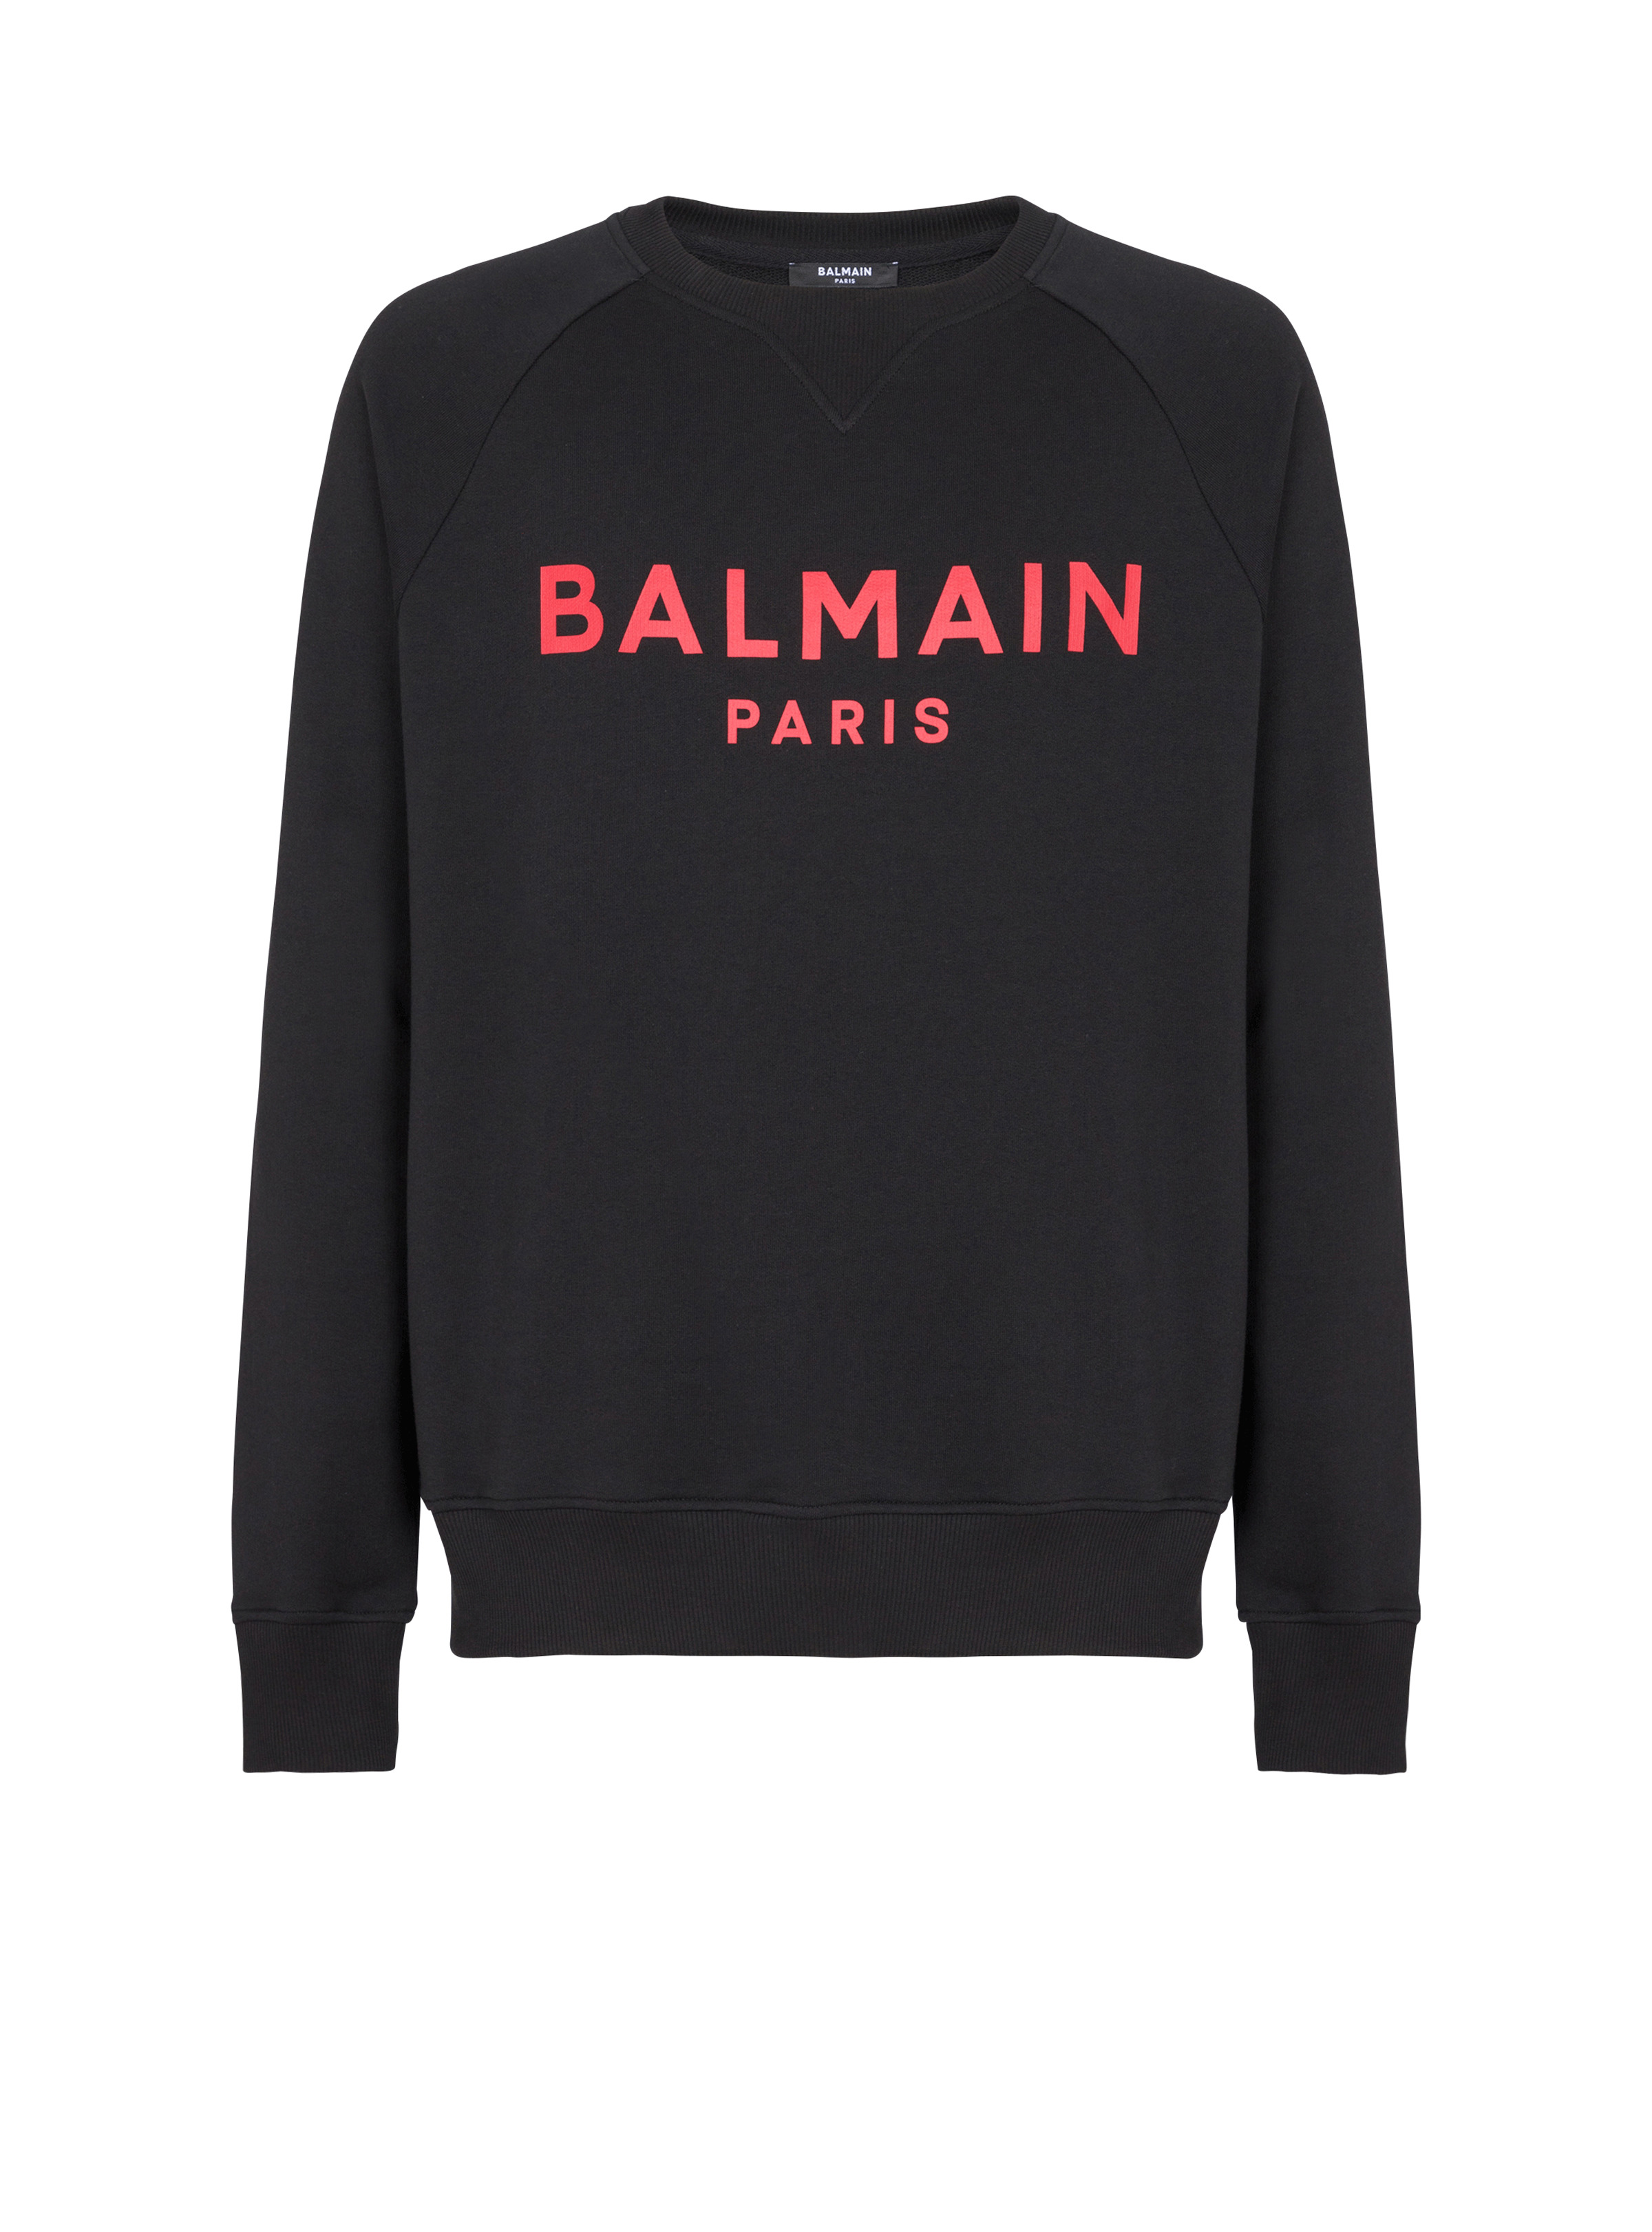 Balmain Paris printed sweatshirt - 1